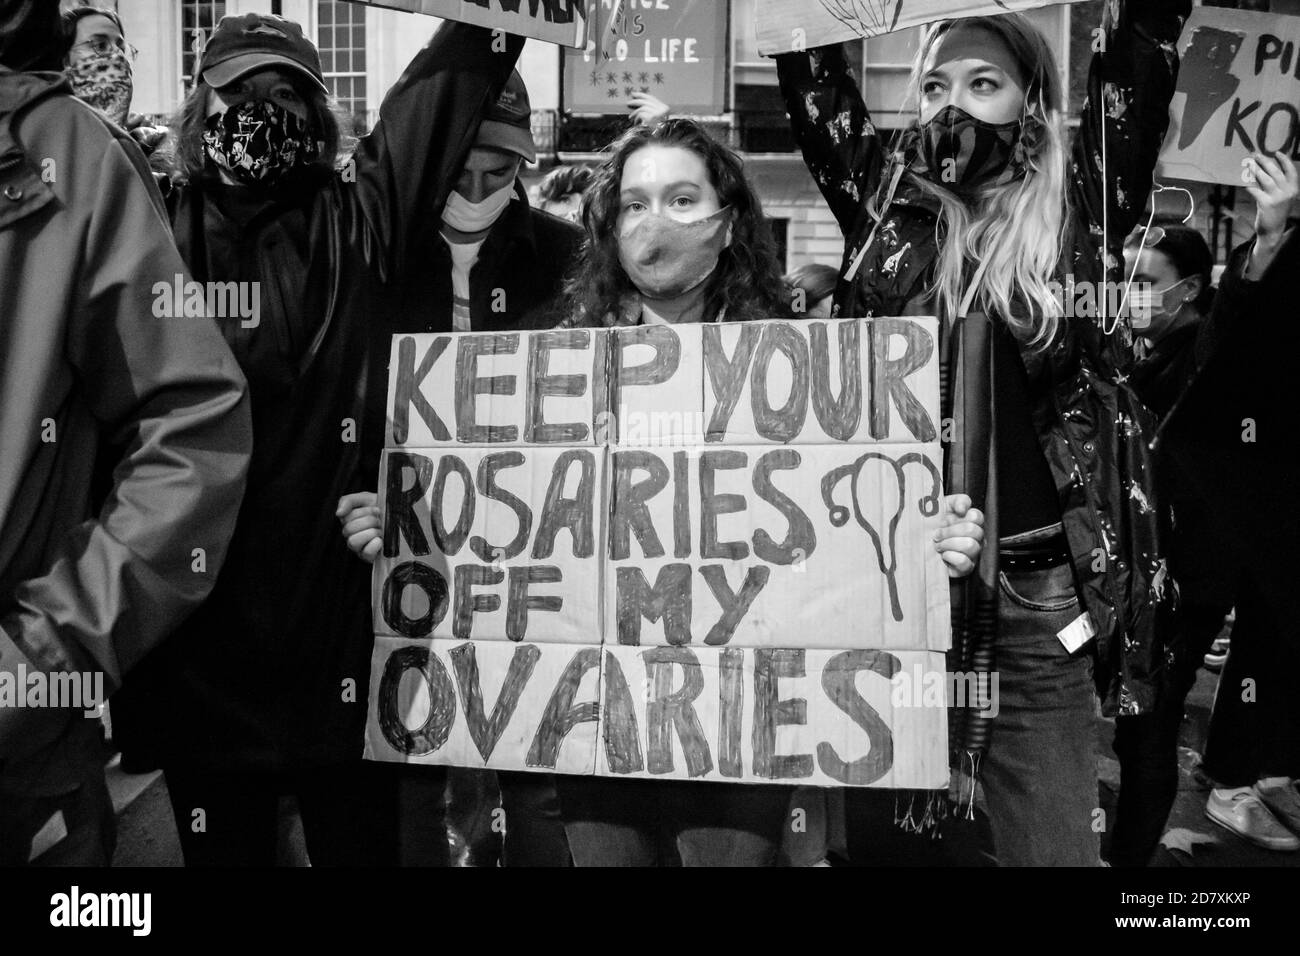 LONDRES/ANGLETERRE- 24 octobre 2020: Des manifestants à l'extérieur de l'ambassade de la République de Pologne protestent contre la nouvelle interdiction de l'avortement en Pologne Banque D'Images